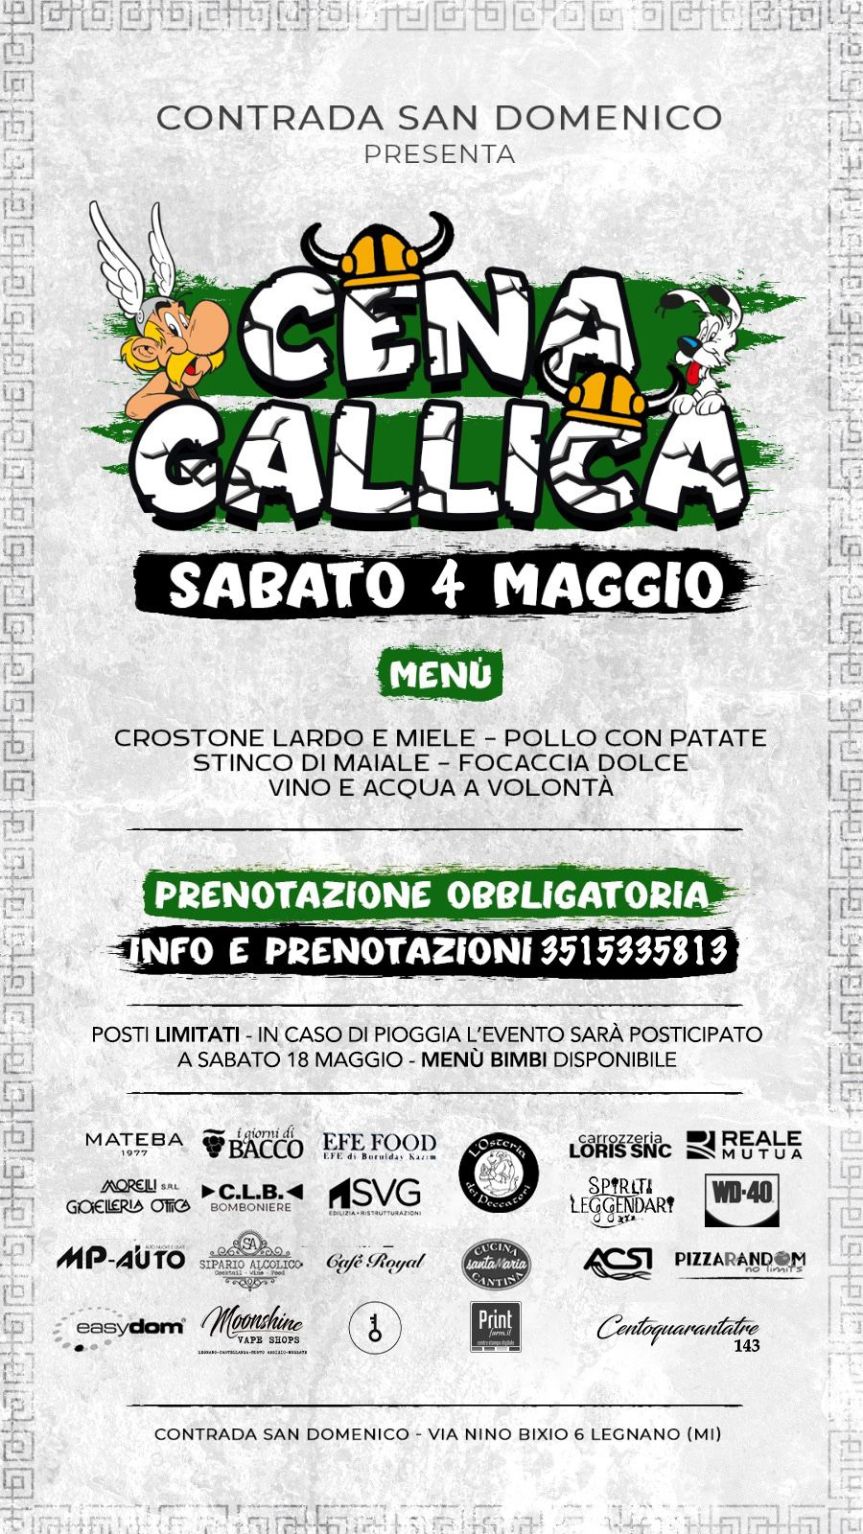 Palio di Legnano, Contrada San Domenico: 04/05 Cena Gallica